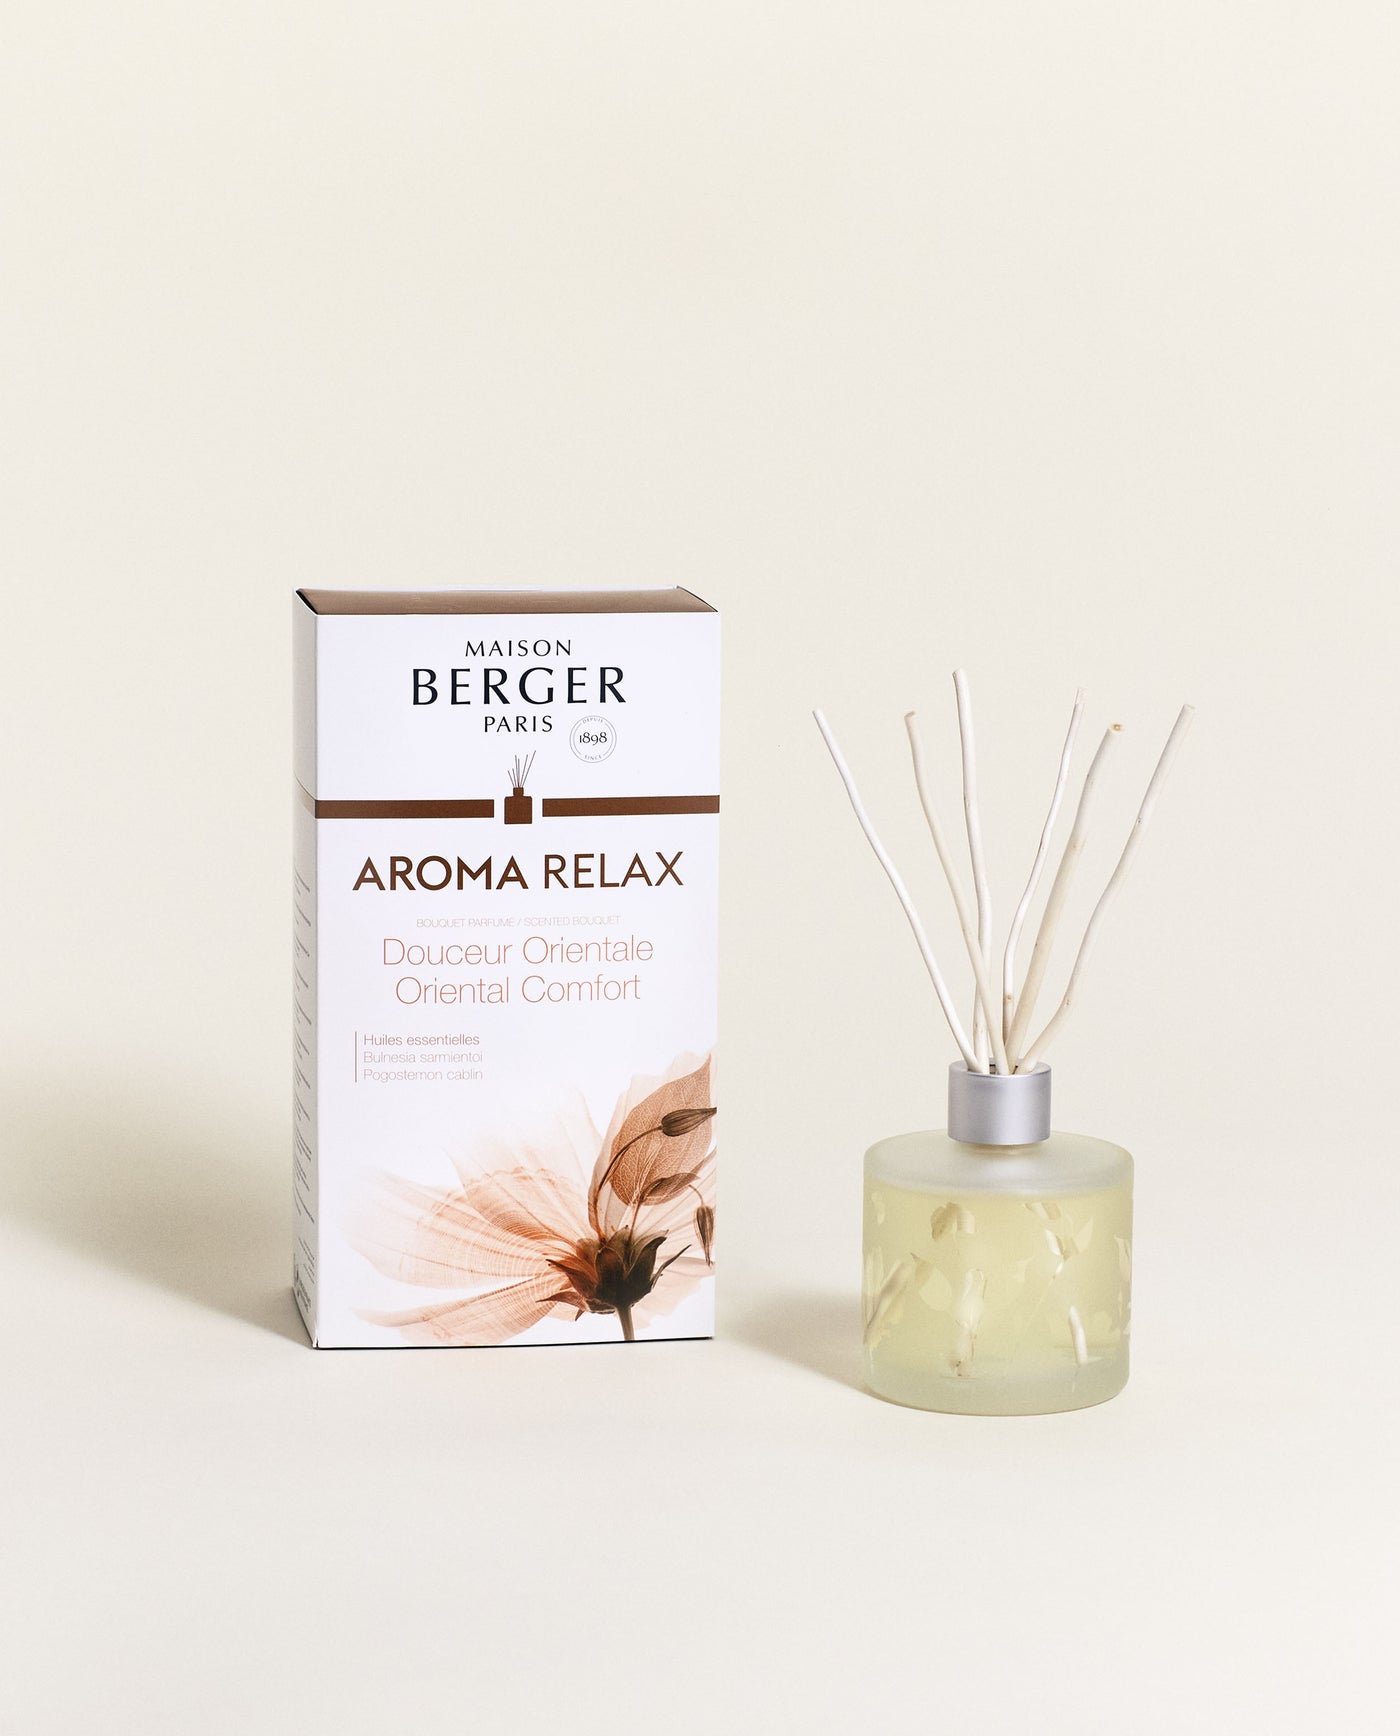 Aroma Relax Raumduft Diffuser Lampe Berger - Maison Berger offizieller Onlineshop DE - AT